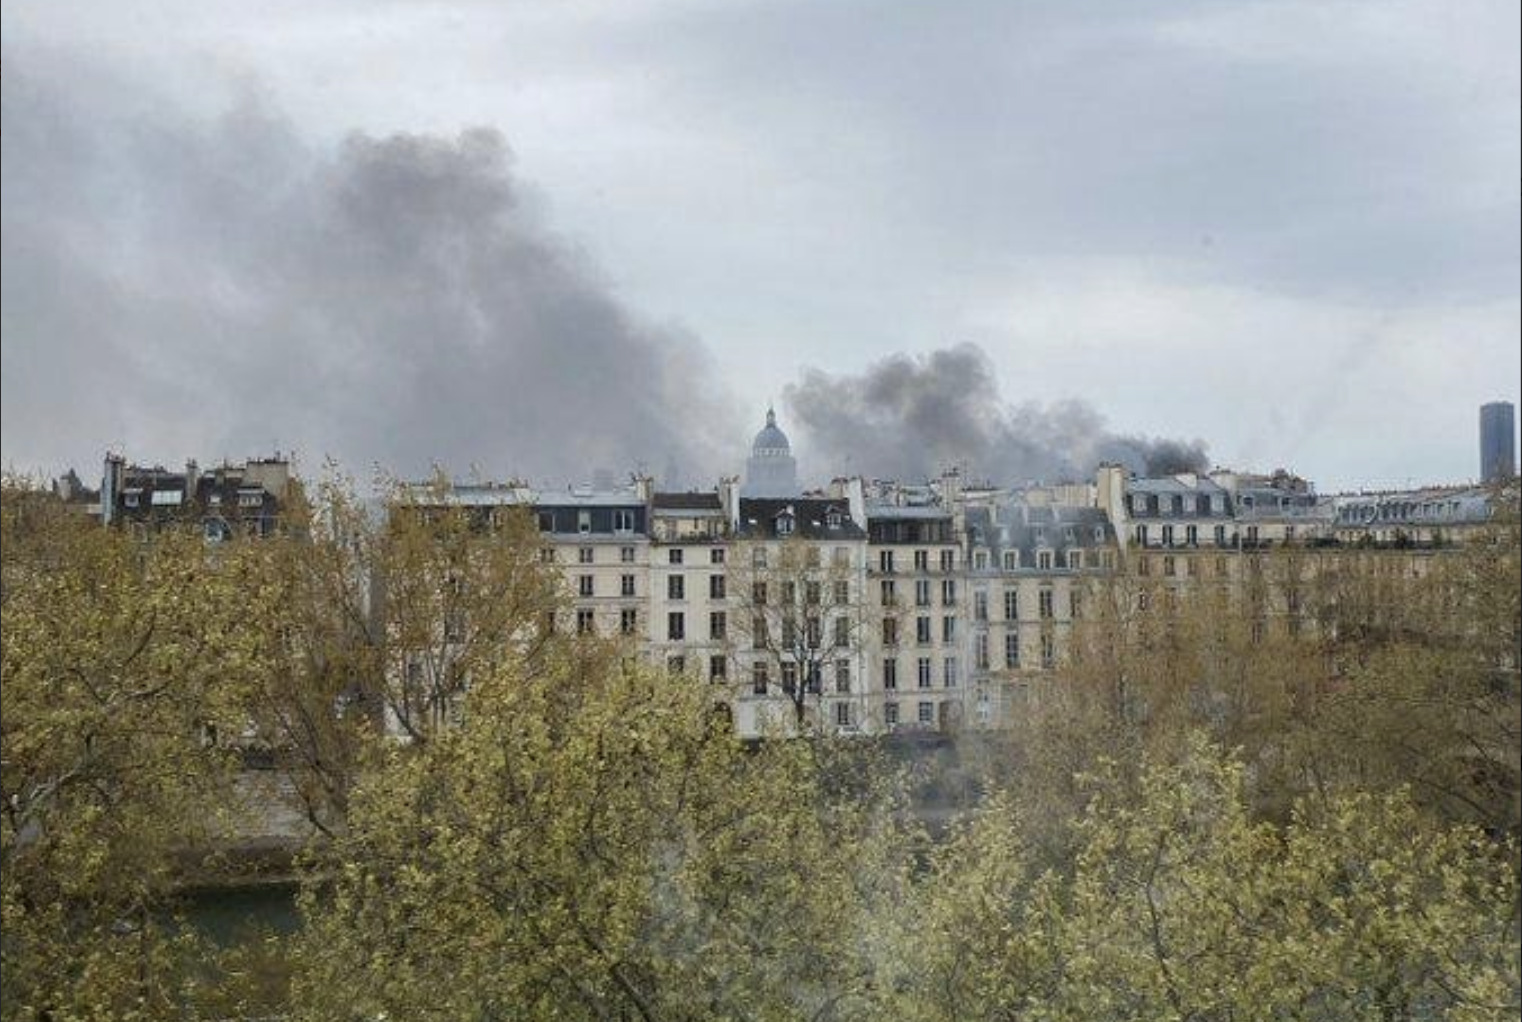 Παρίσι: Ισχυρή έκρηξη κοντά στην Παναγία των Παρισίων – Στις φλόγες ένα λεωφορείο…!!! Συναγερμός σήμανε στο κέντρο του Παρισιού όταν ακούστηκαν εκρήξεις.